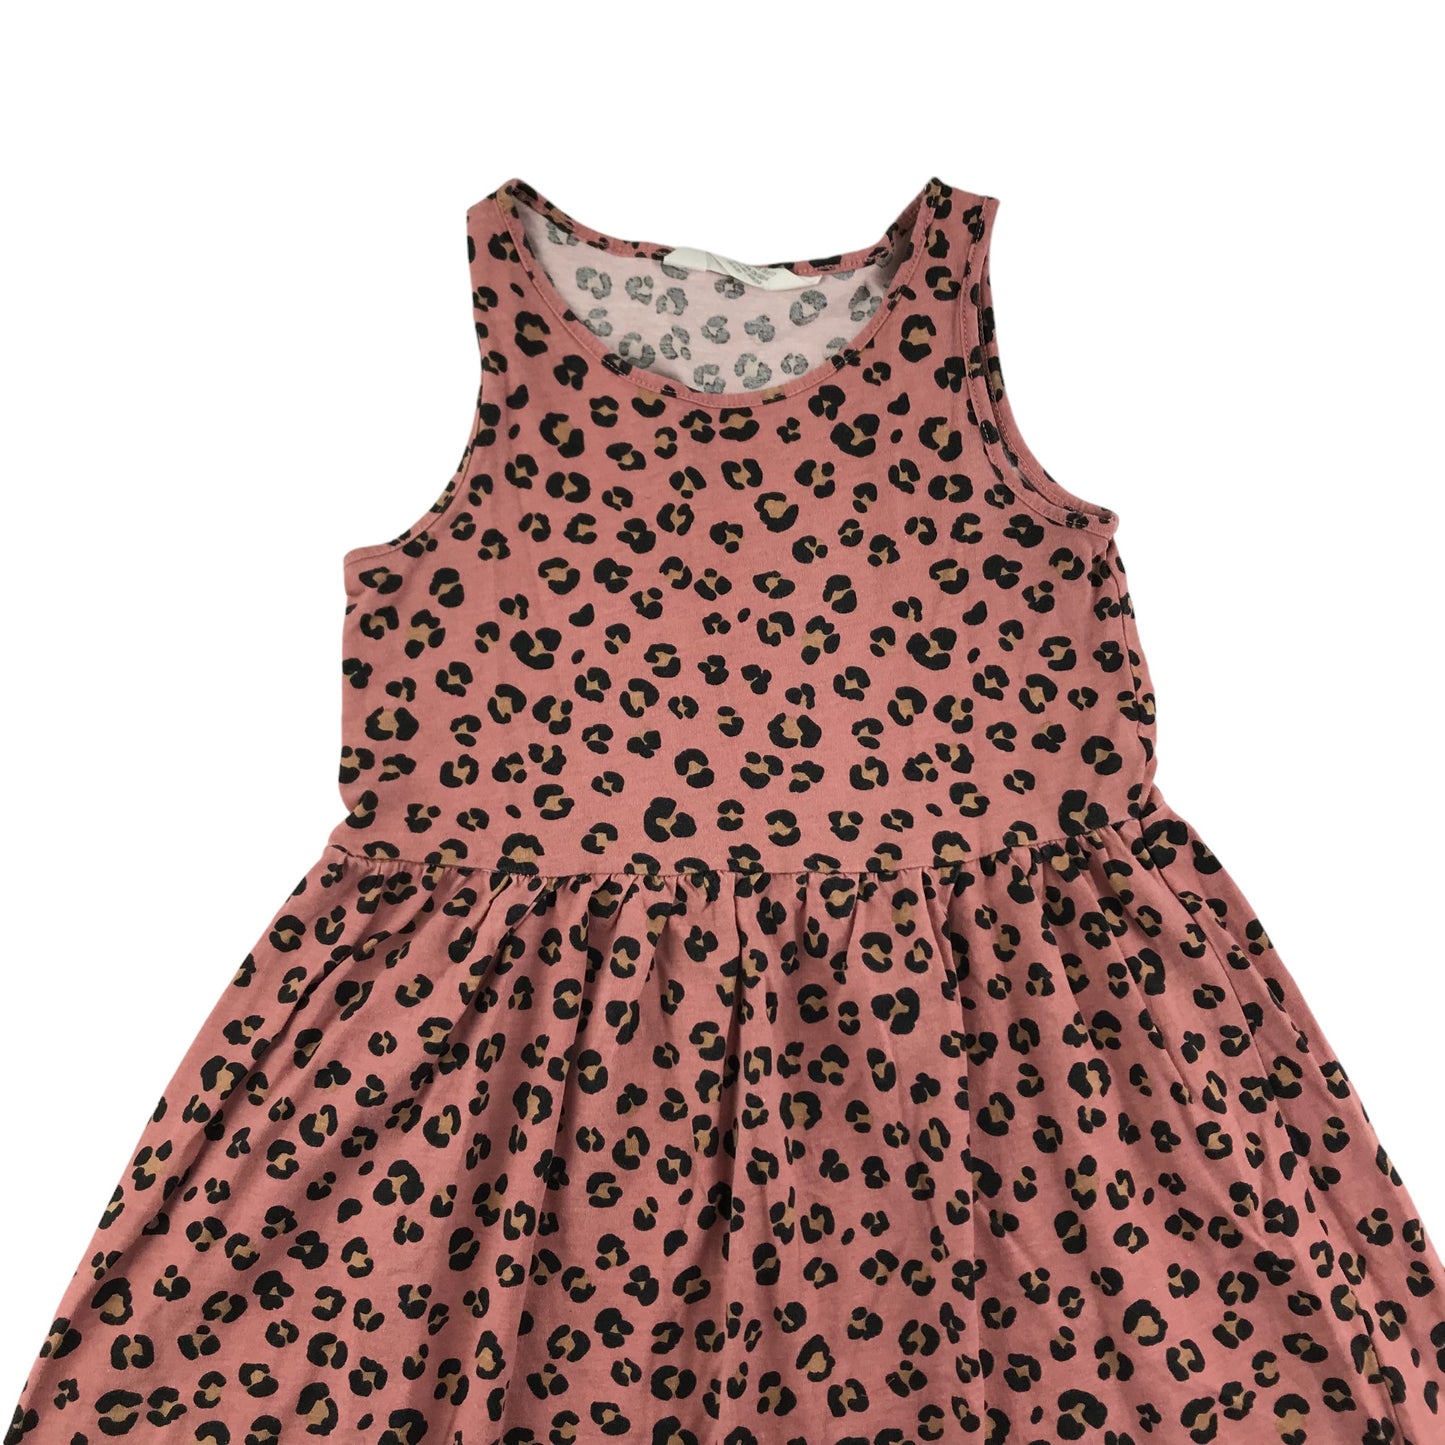 H&M Dress Age 6-8 Light Terracotta Leopard Print Cotton